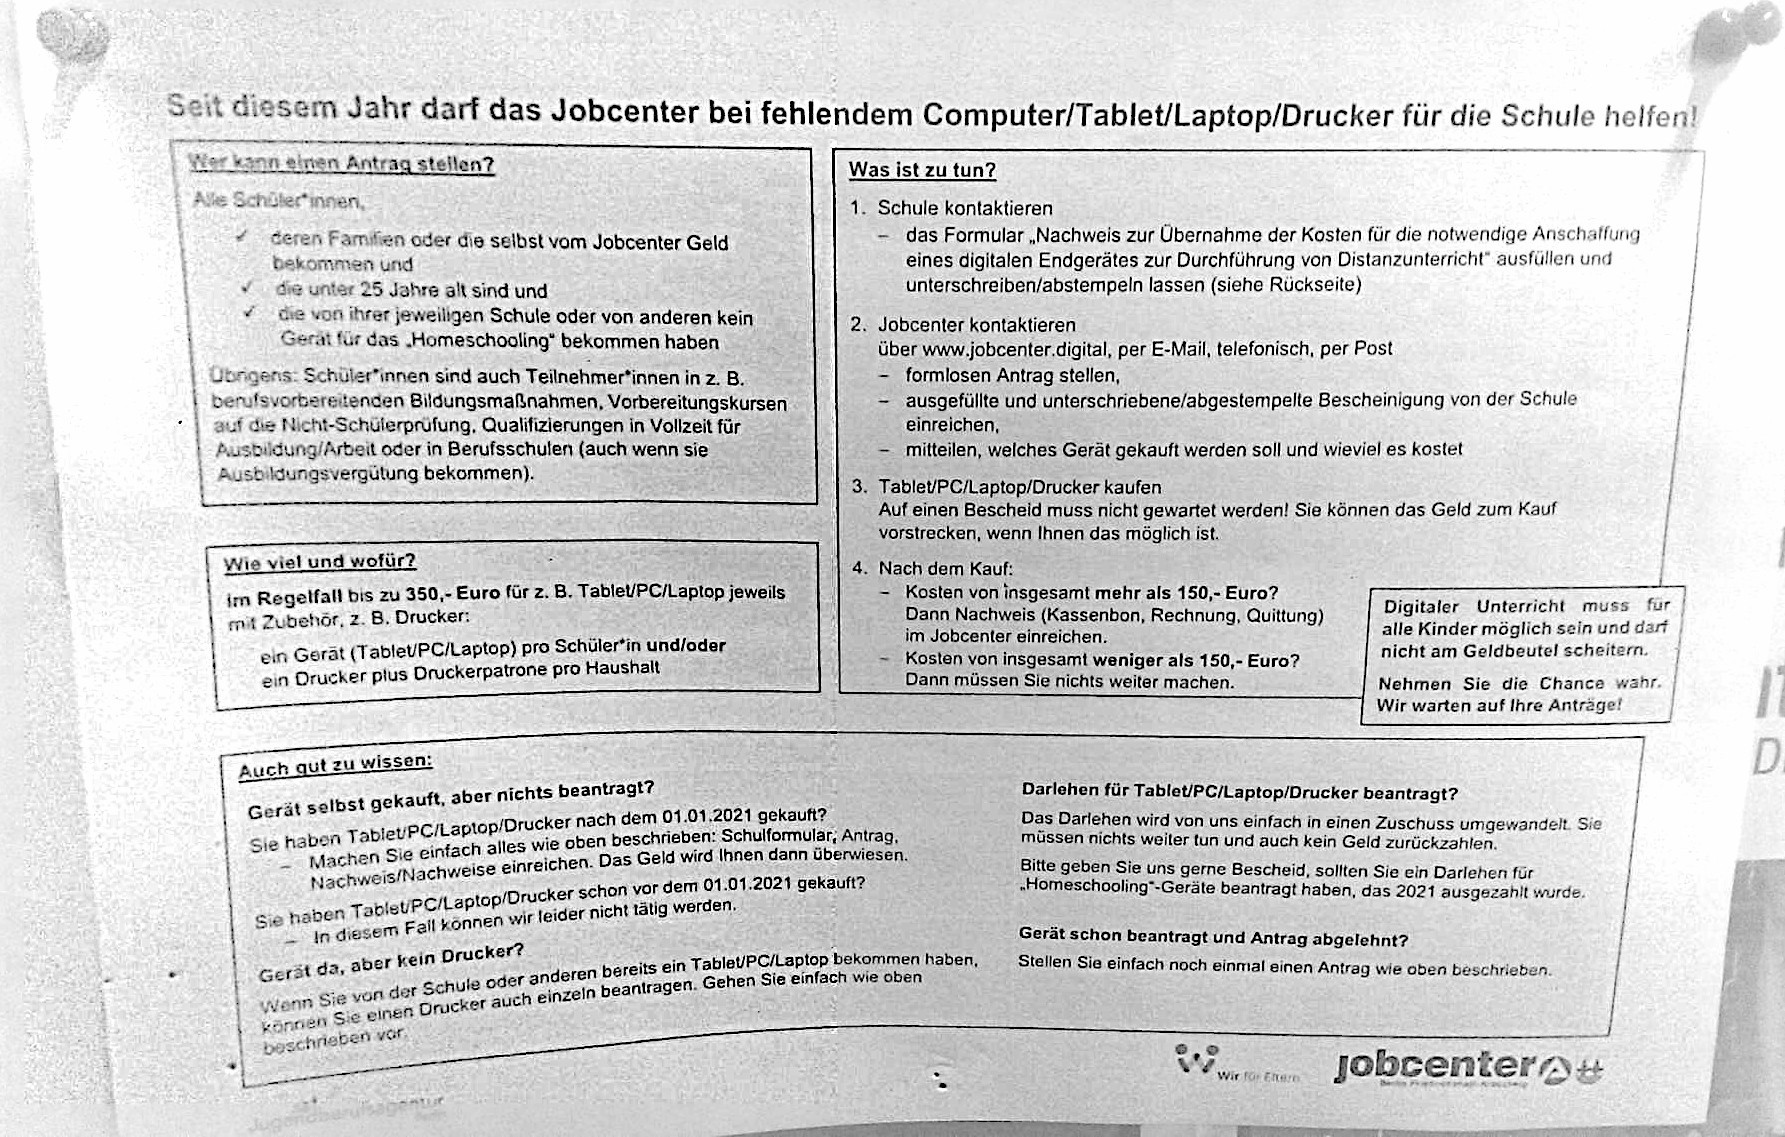 Ein Aushang des „Jobcenters Friedrichshain-Kreuzberg“ mit Informationen darüber, wie man eine Kostenübernahme für Computer und ähnliche Hardware erhalten kann.